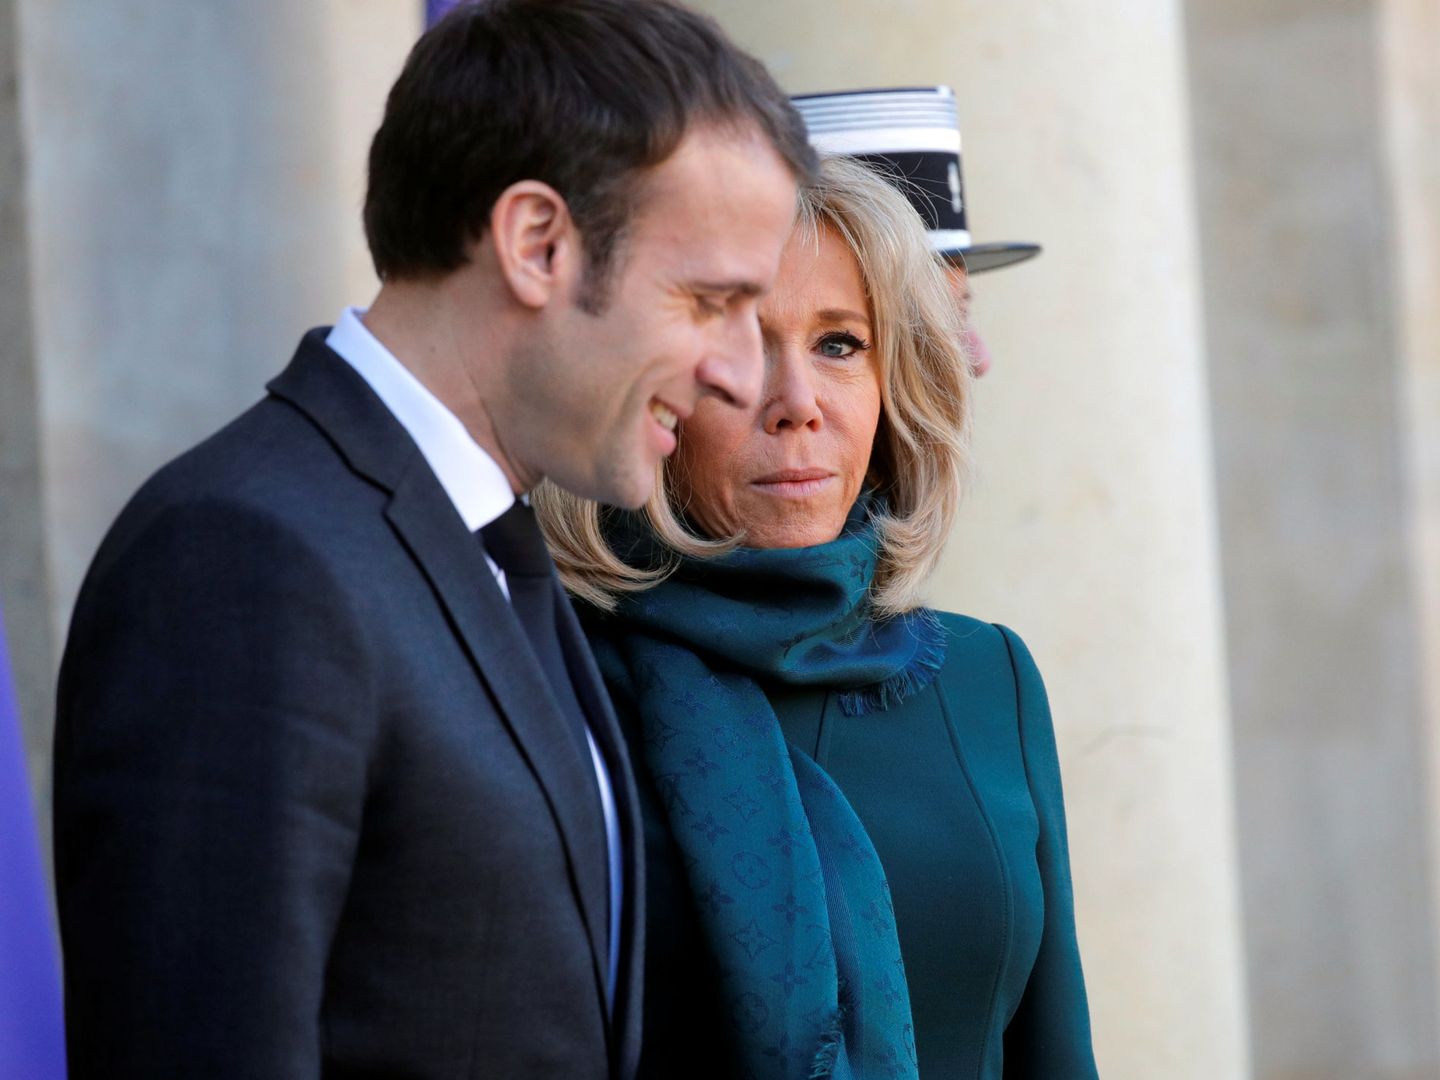 El matrimonio Macron. (Reuters)